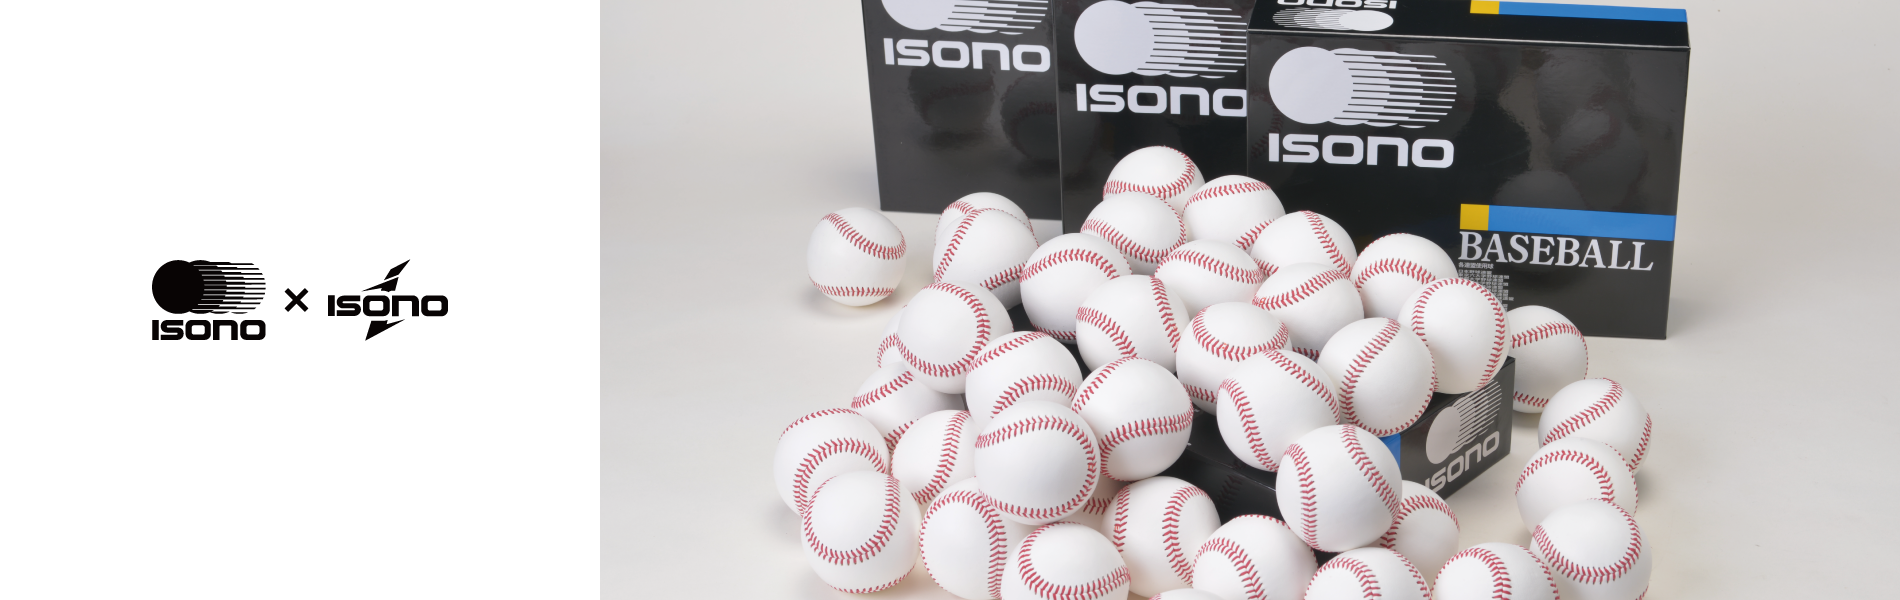 イソノの硬式野球ボール | イソノ・isono・野球・ボール